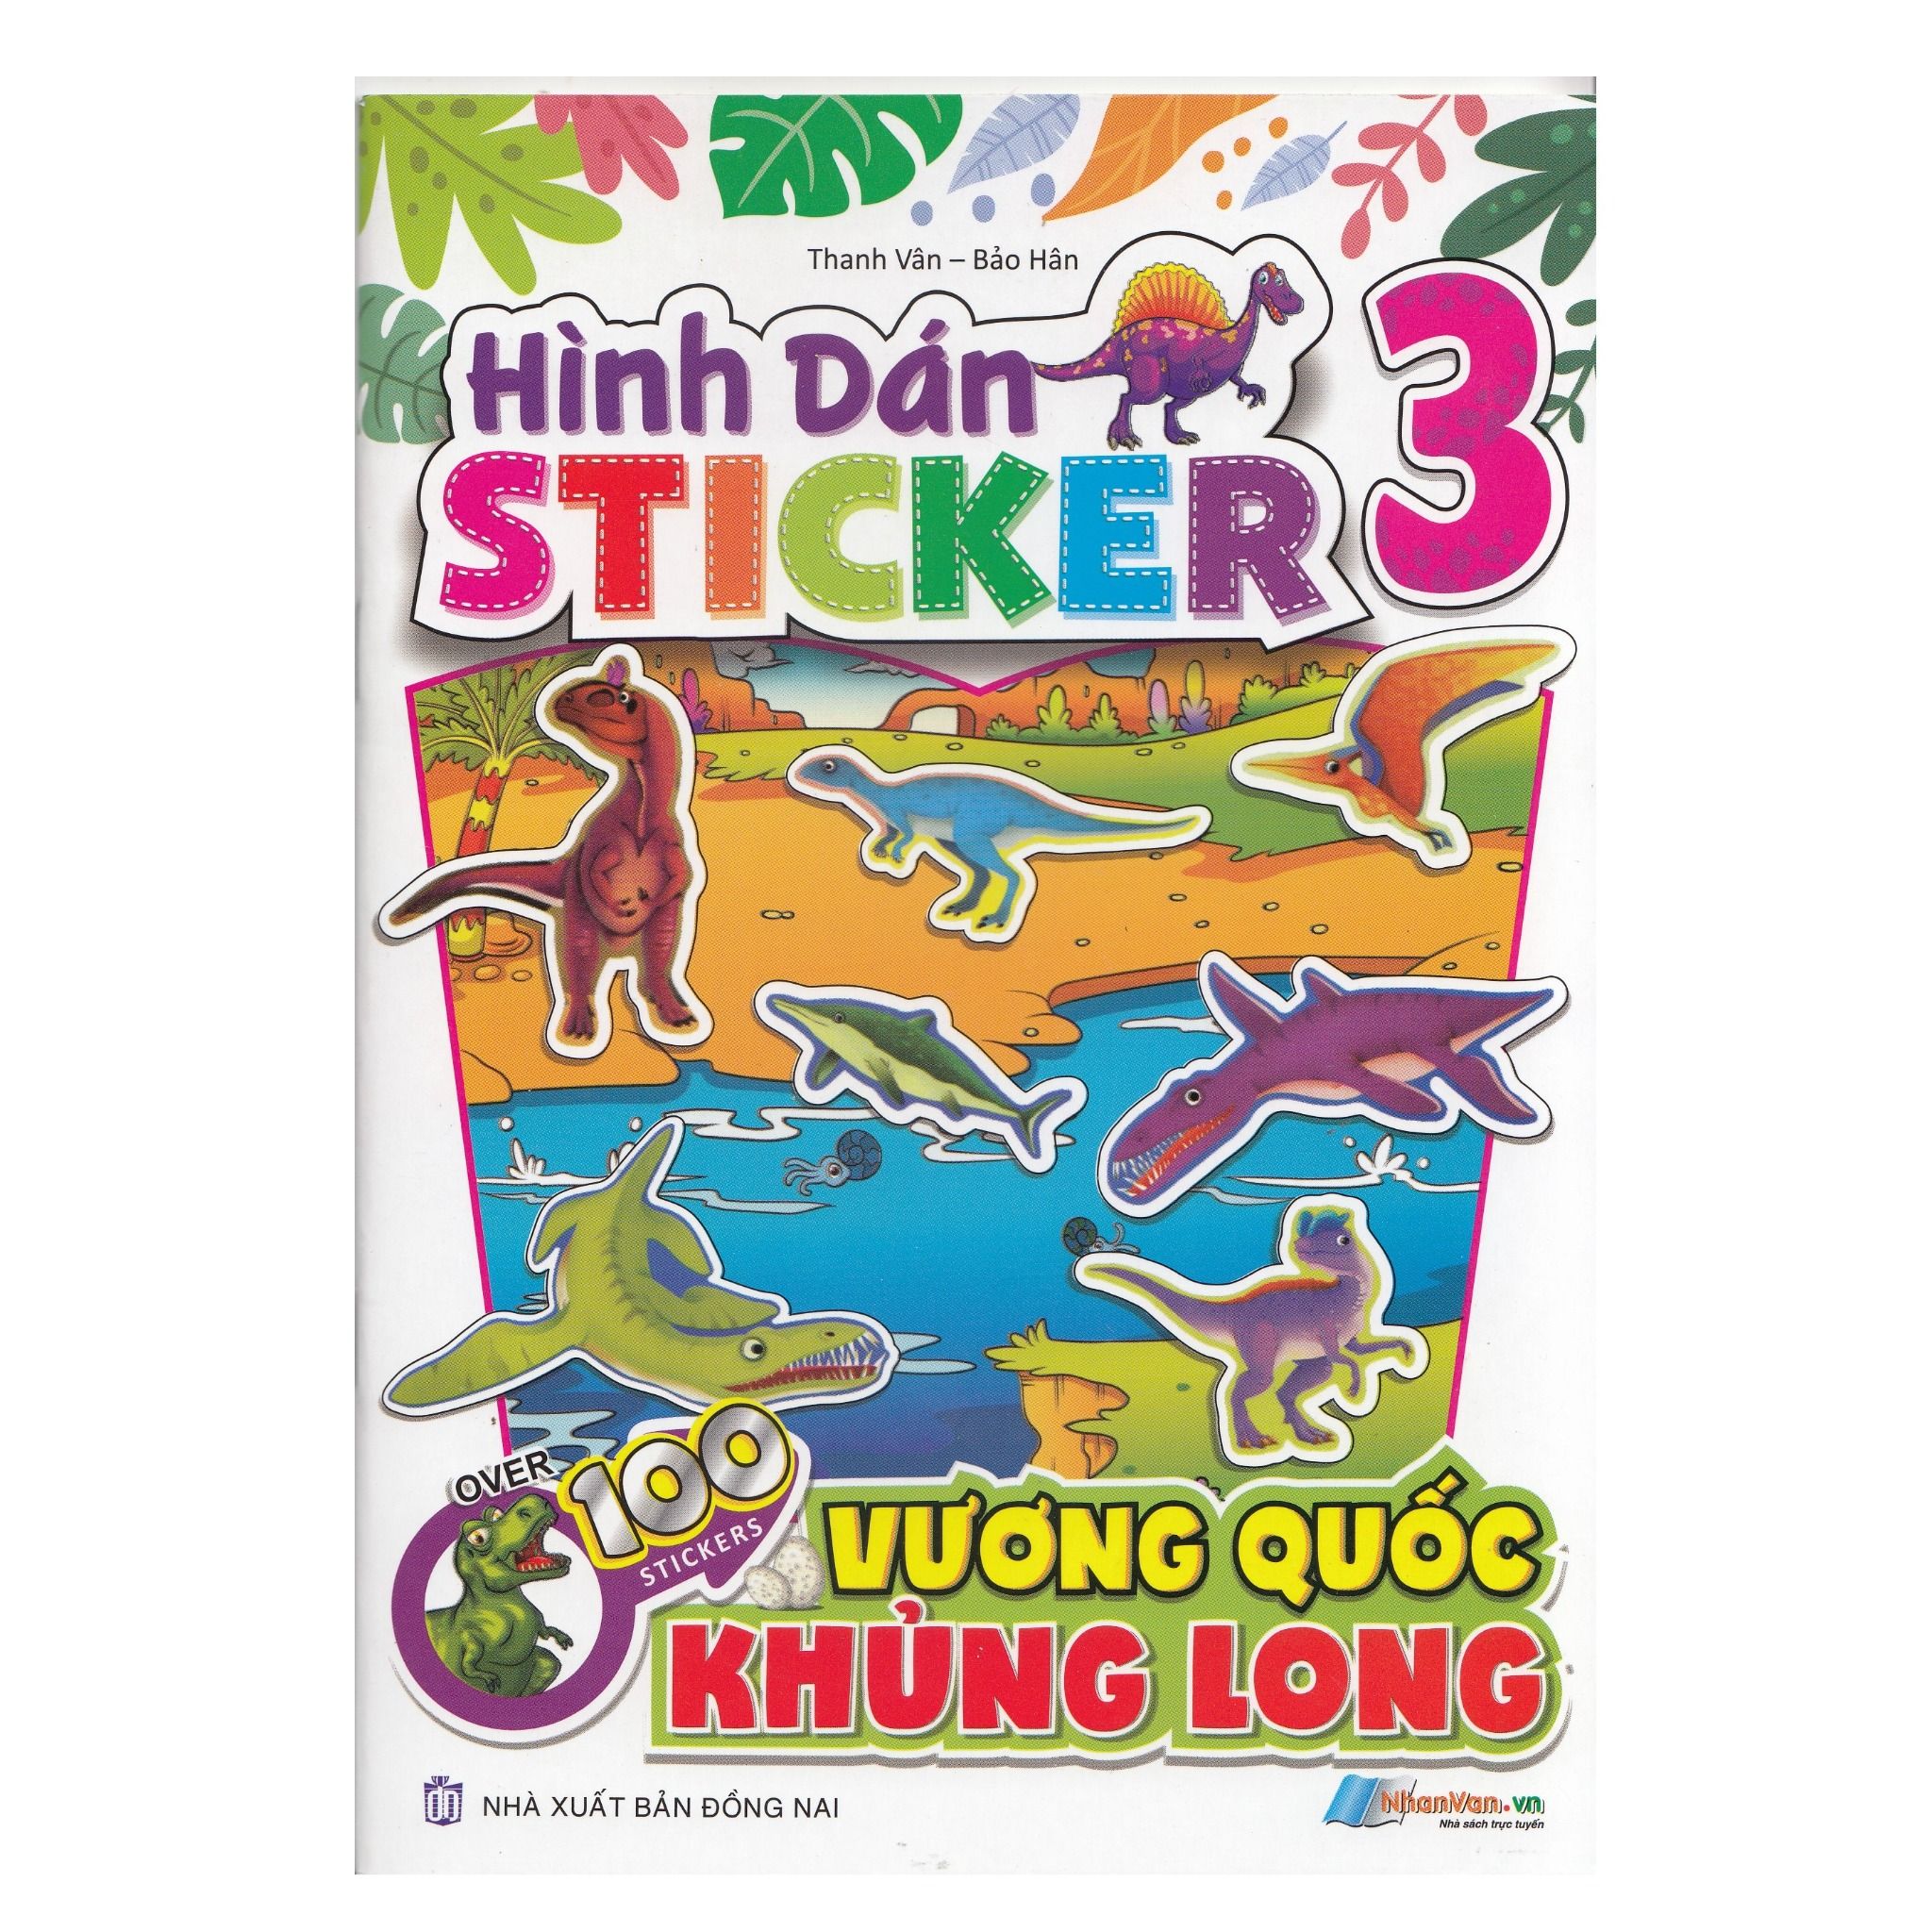  Hình Dán Stickers - 100 Stickers Vương Quốc Khủng Long - Tập 3 